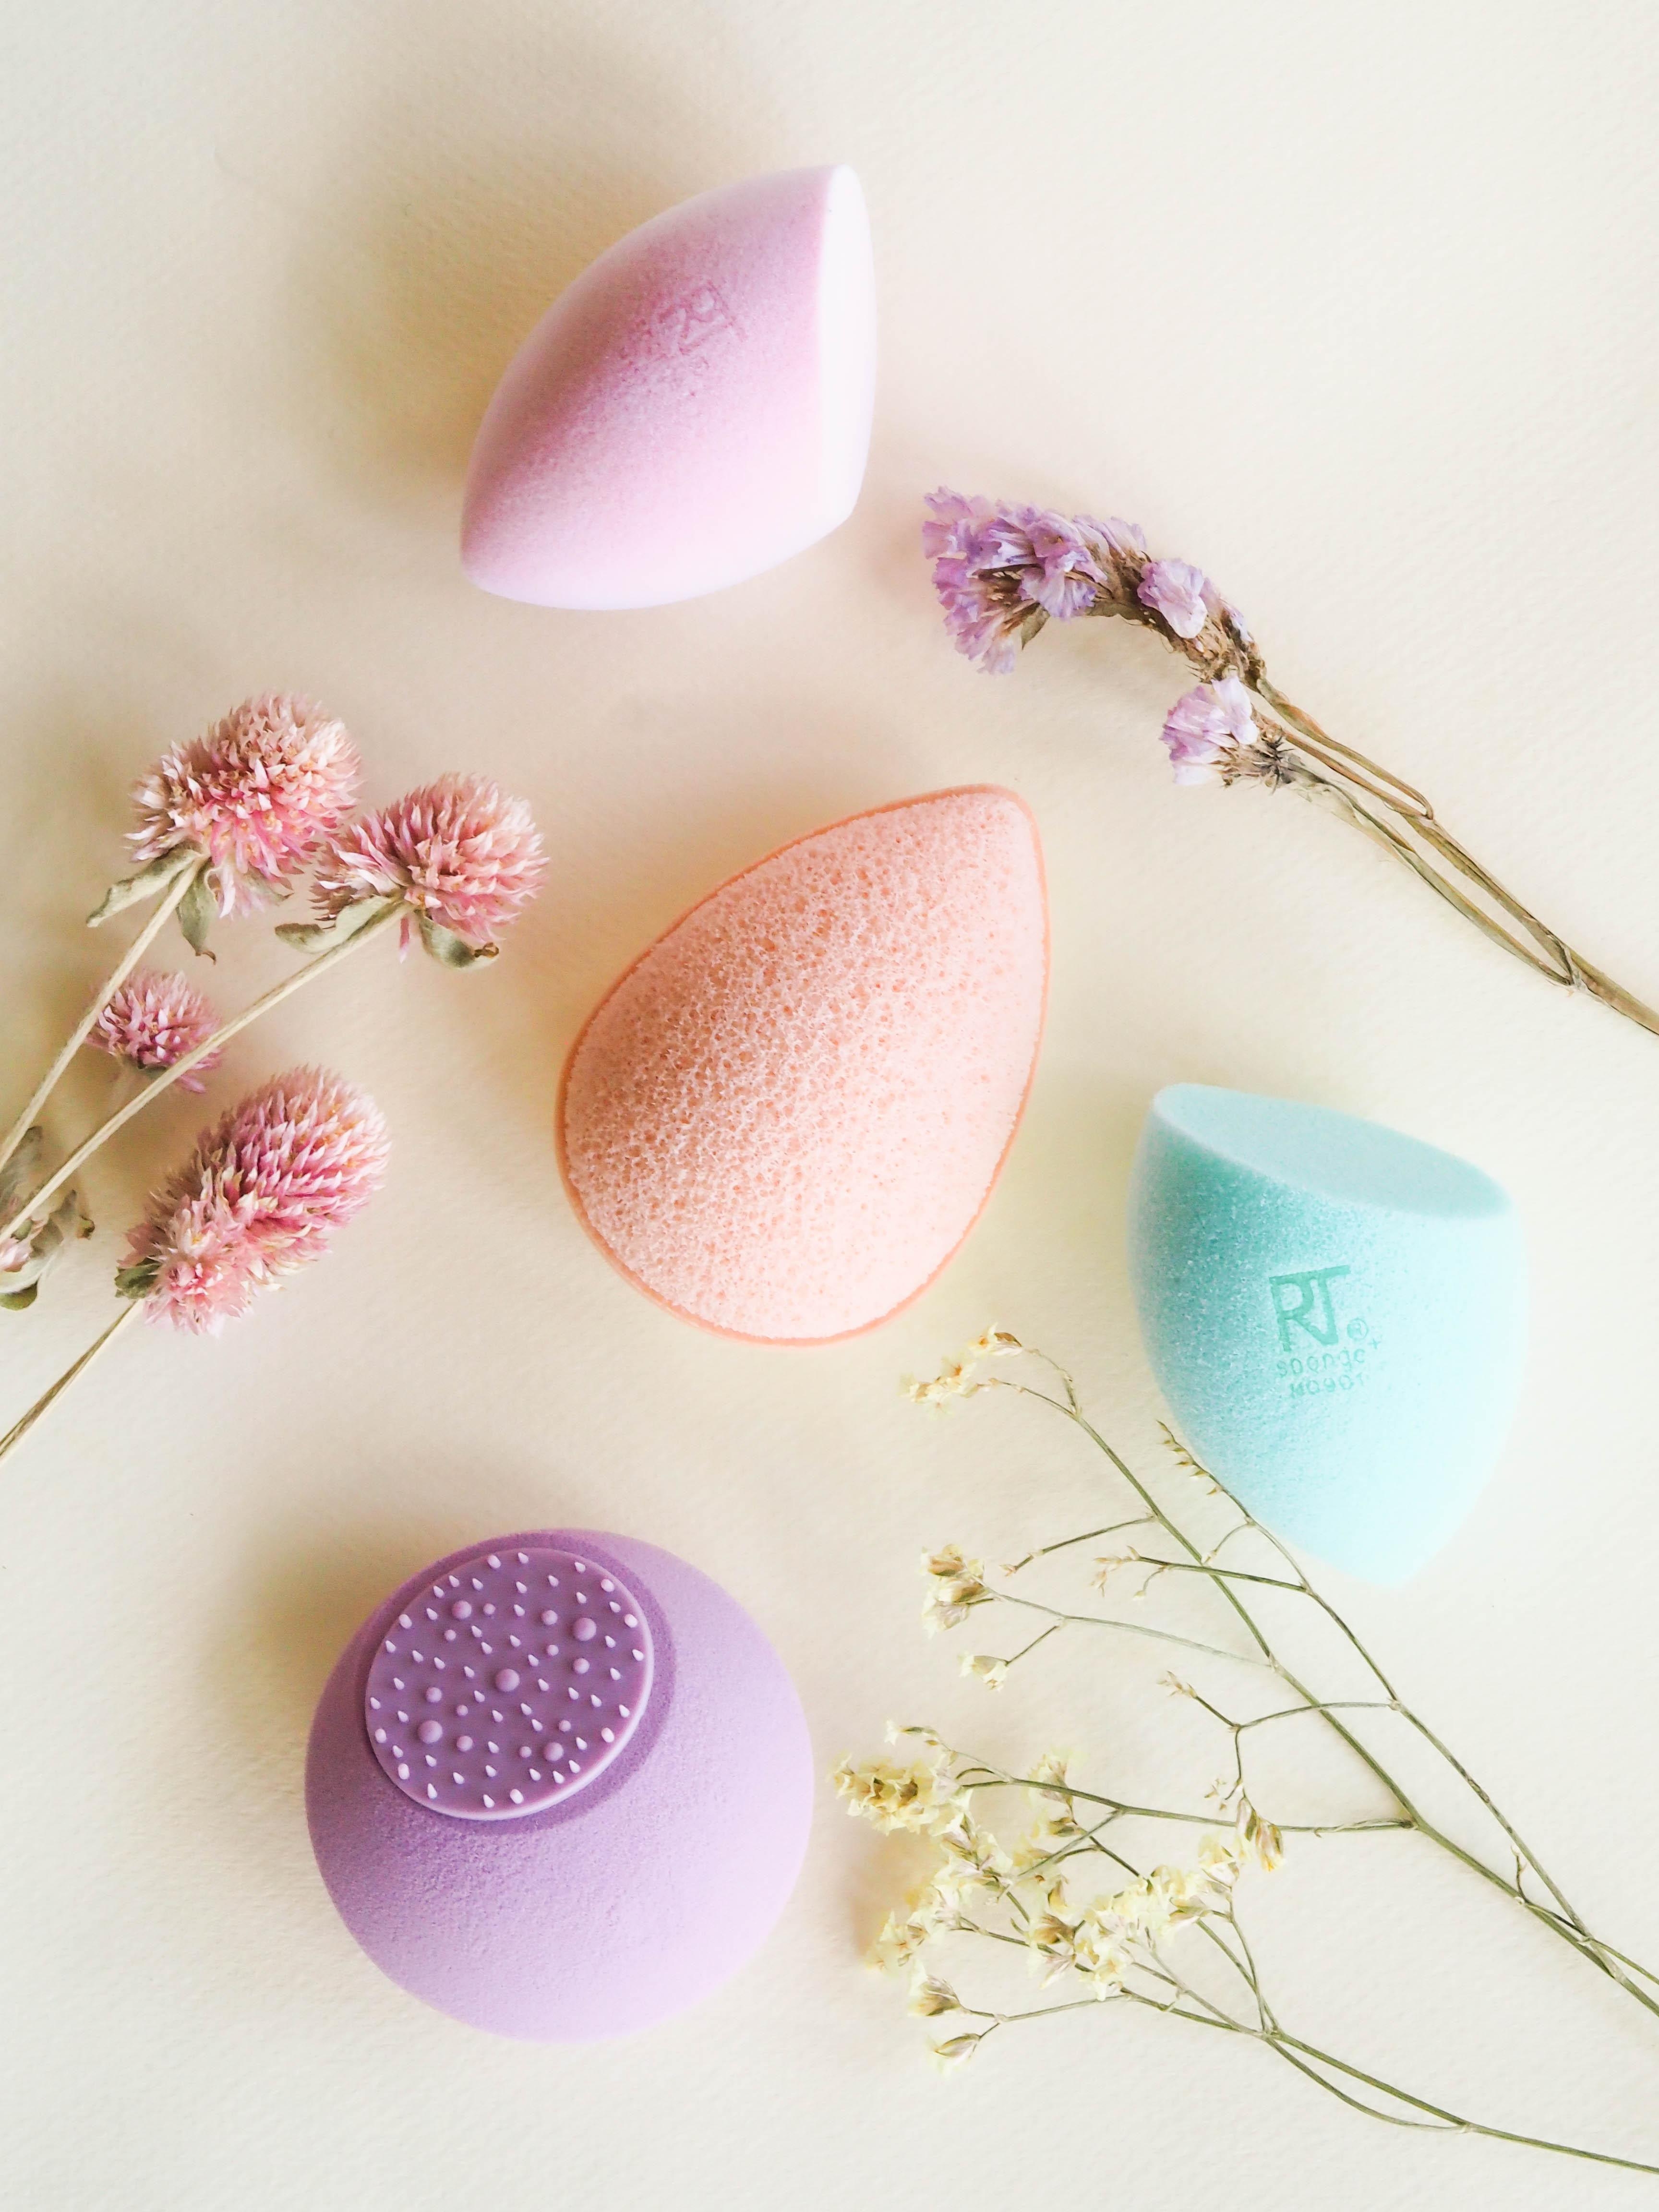 Schwamm drüber mit den #realtechniques Make-up Eiern in zart-fröhlichen Pastellfarben! #beautylieblinge 